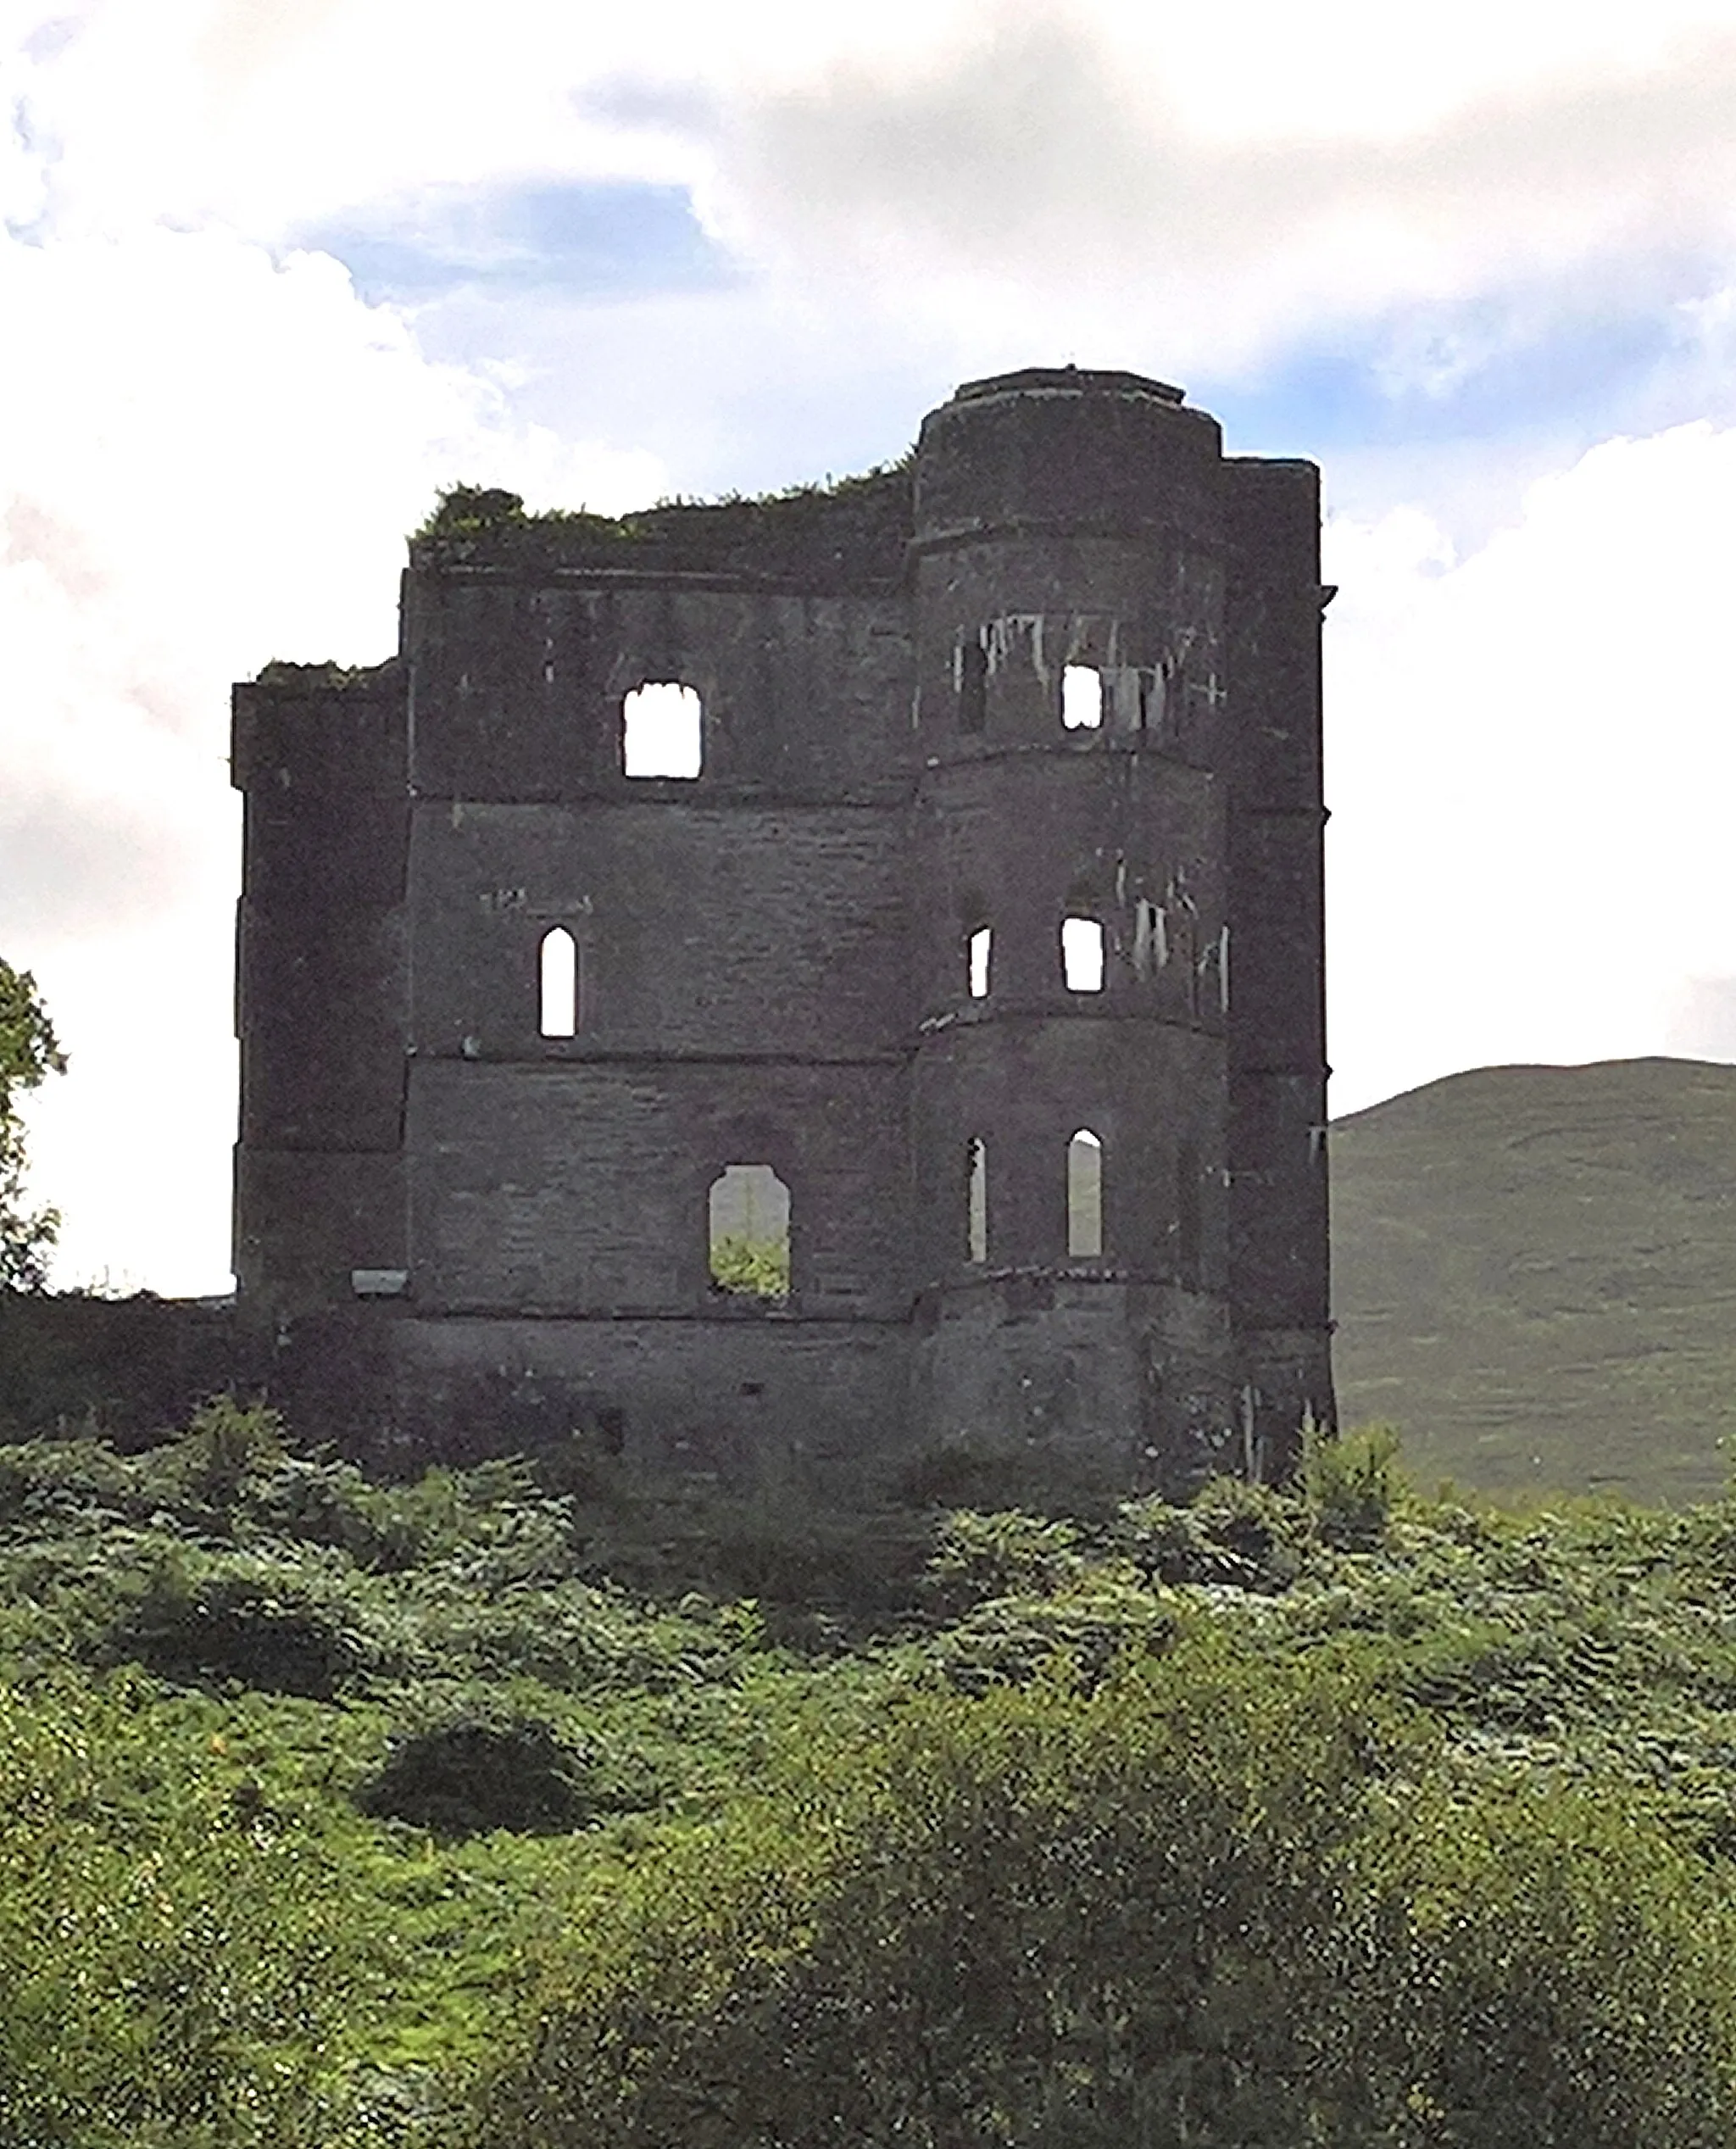 Photo showing: Wynn's Castle (auch Wynne's Folly, Headley Towers oder Glenbeigh Towers Castle) sind die Ruinen eines burgähnlichen Schlosses für Lord Headley Wynn(e) südlich des Ortes Glenbeigh und östlich der Bundesstraße N70 (Ring of Kerry), auf der Iveragh Halbinsel (Uíbh Ráthach) in der Gälischen Region (Irisch sprechend) des County Kerry in Irland. Blick nach Osten, N70 zur Schlossruine